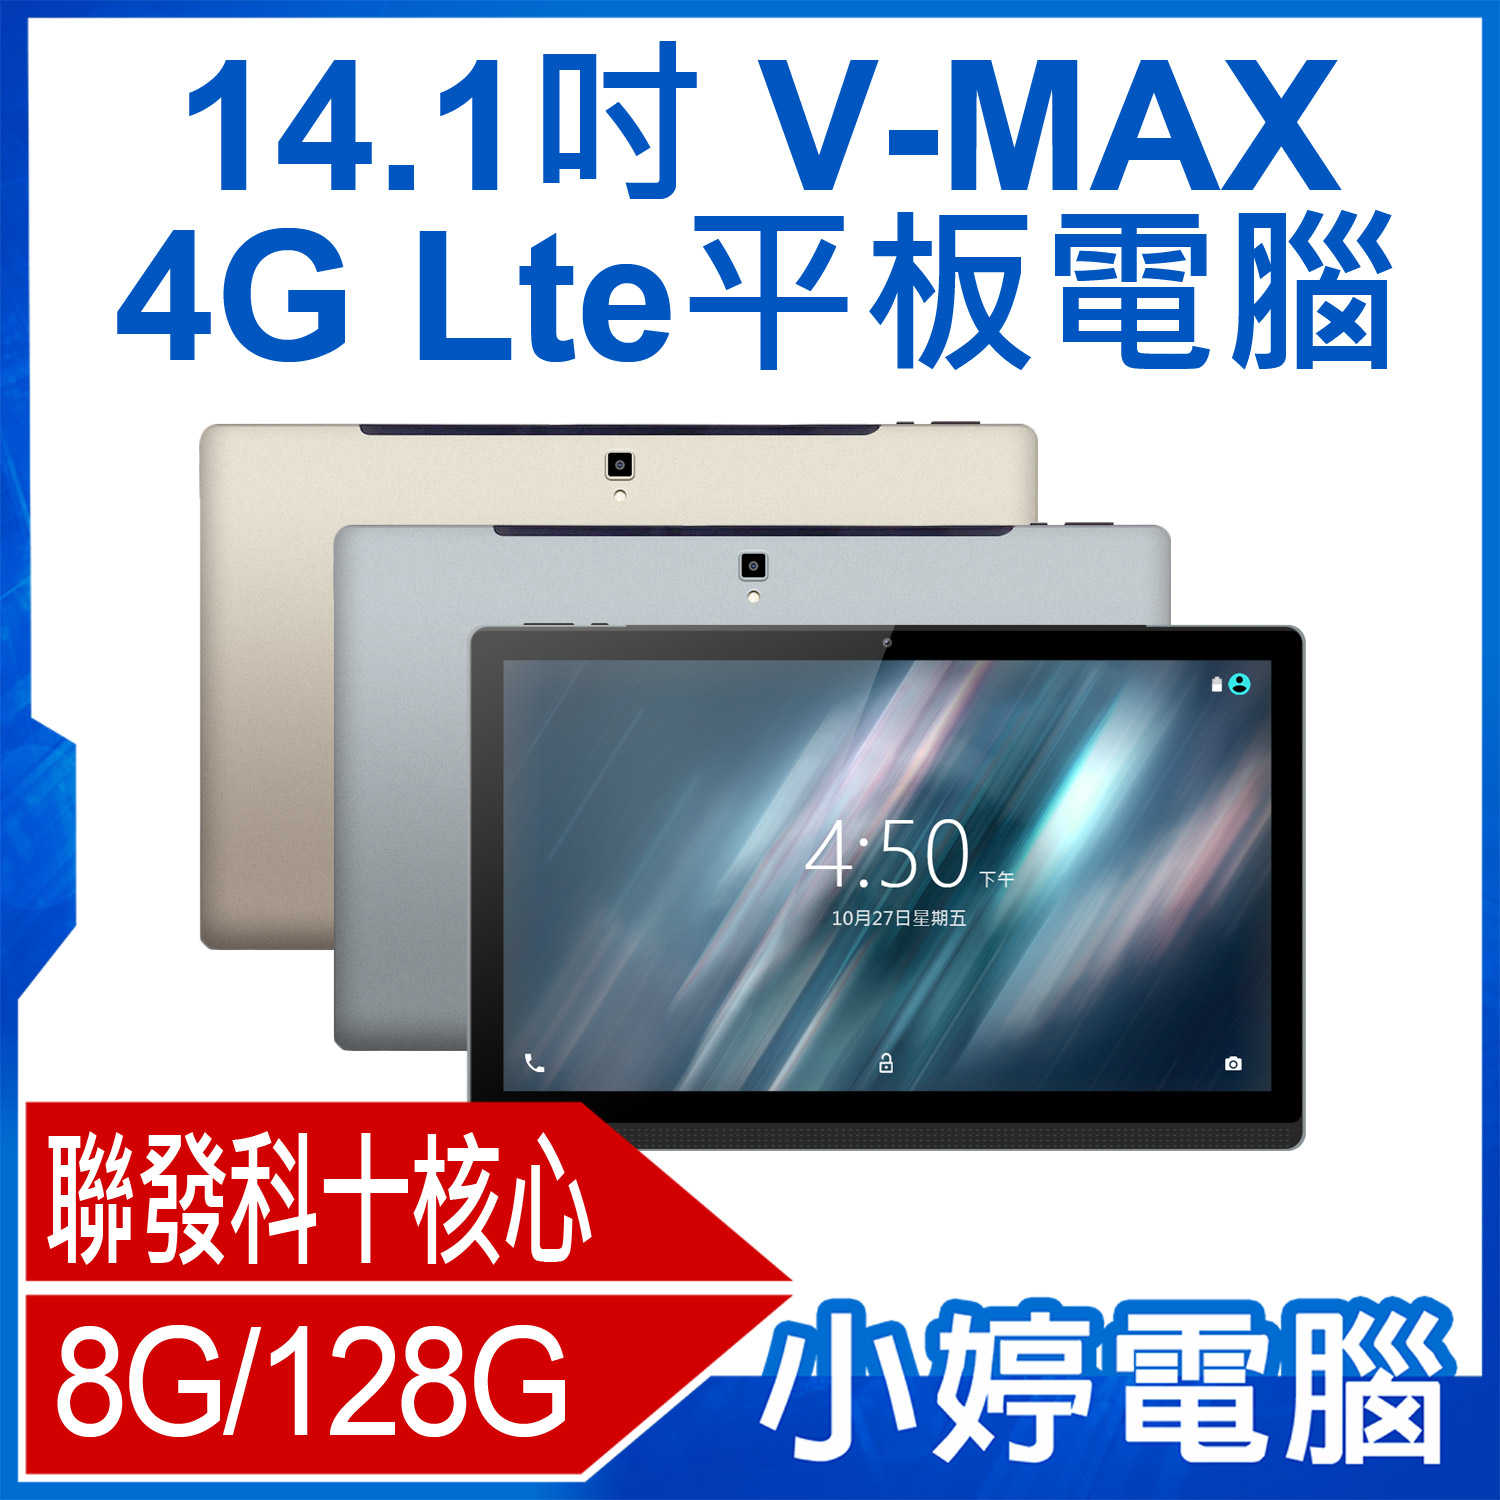 【小婷電腦】V-MAX 14.1吋 4G Lte平板電腦 聯發科十核心 安卓 可插電話卡 8G/128G